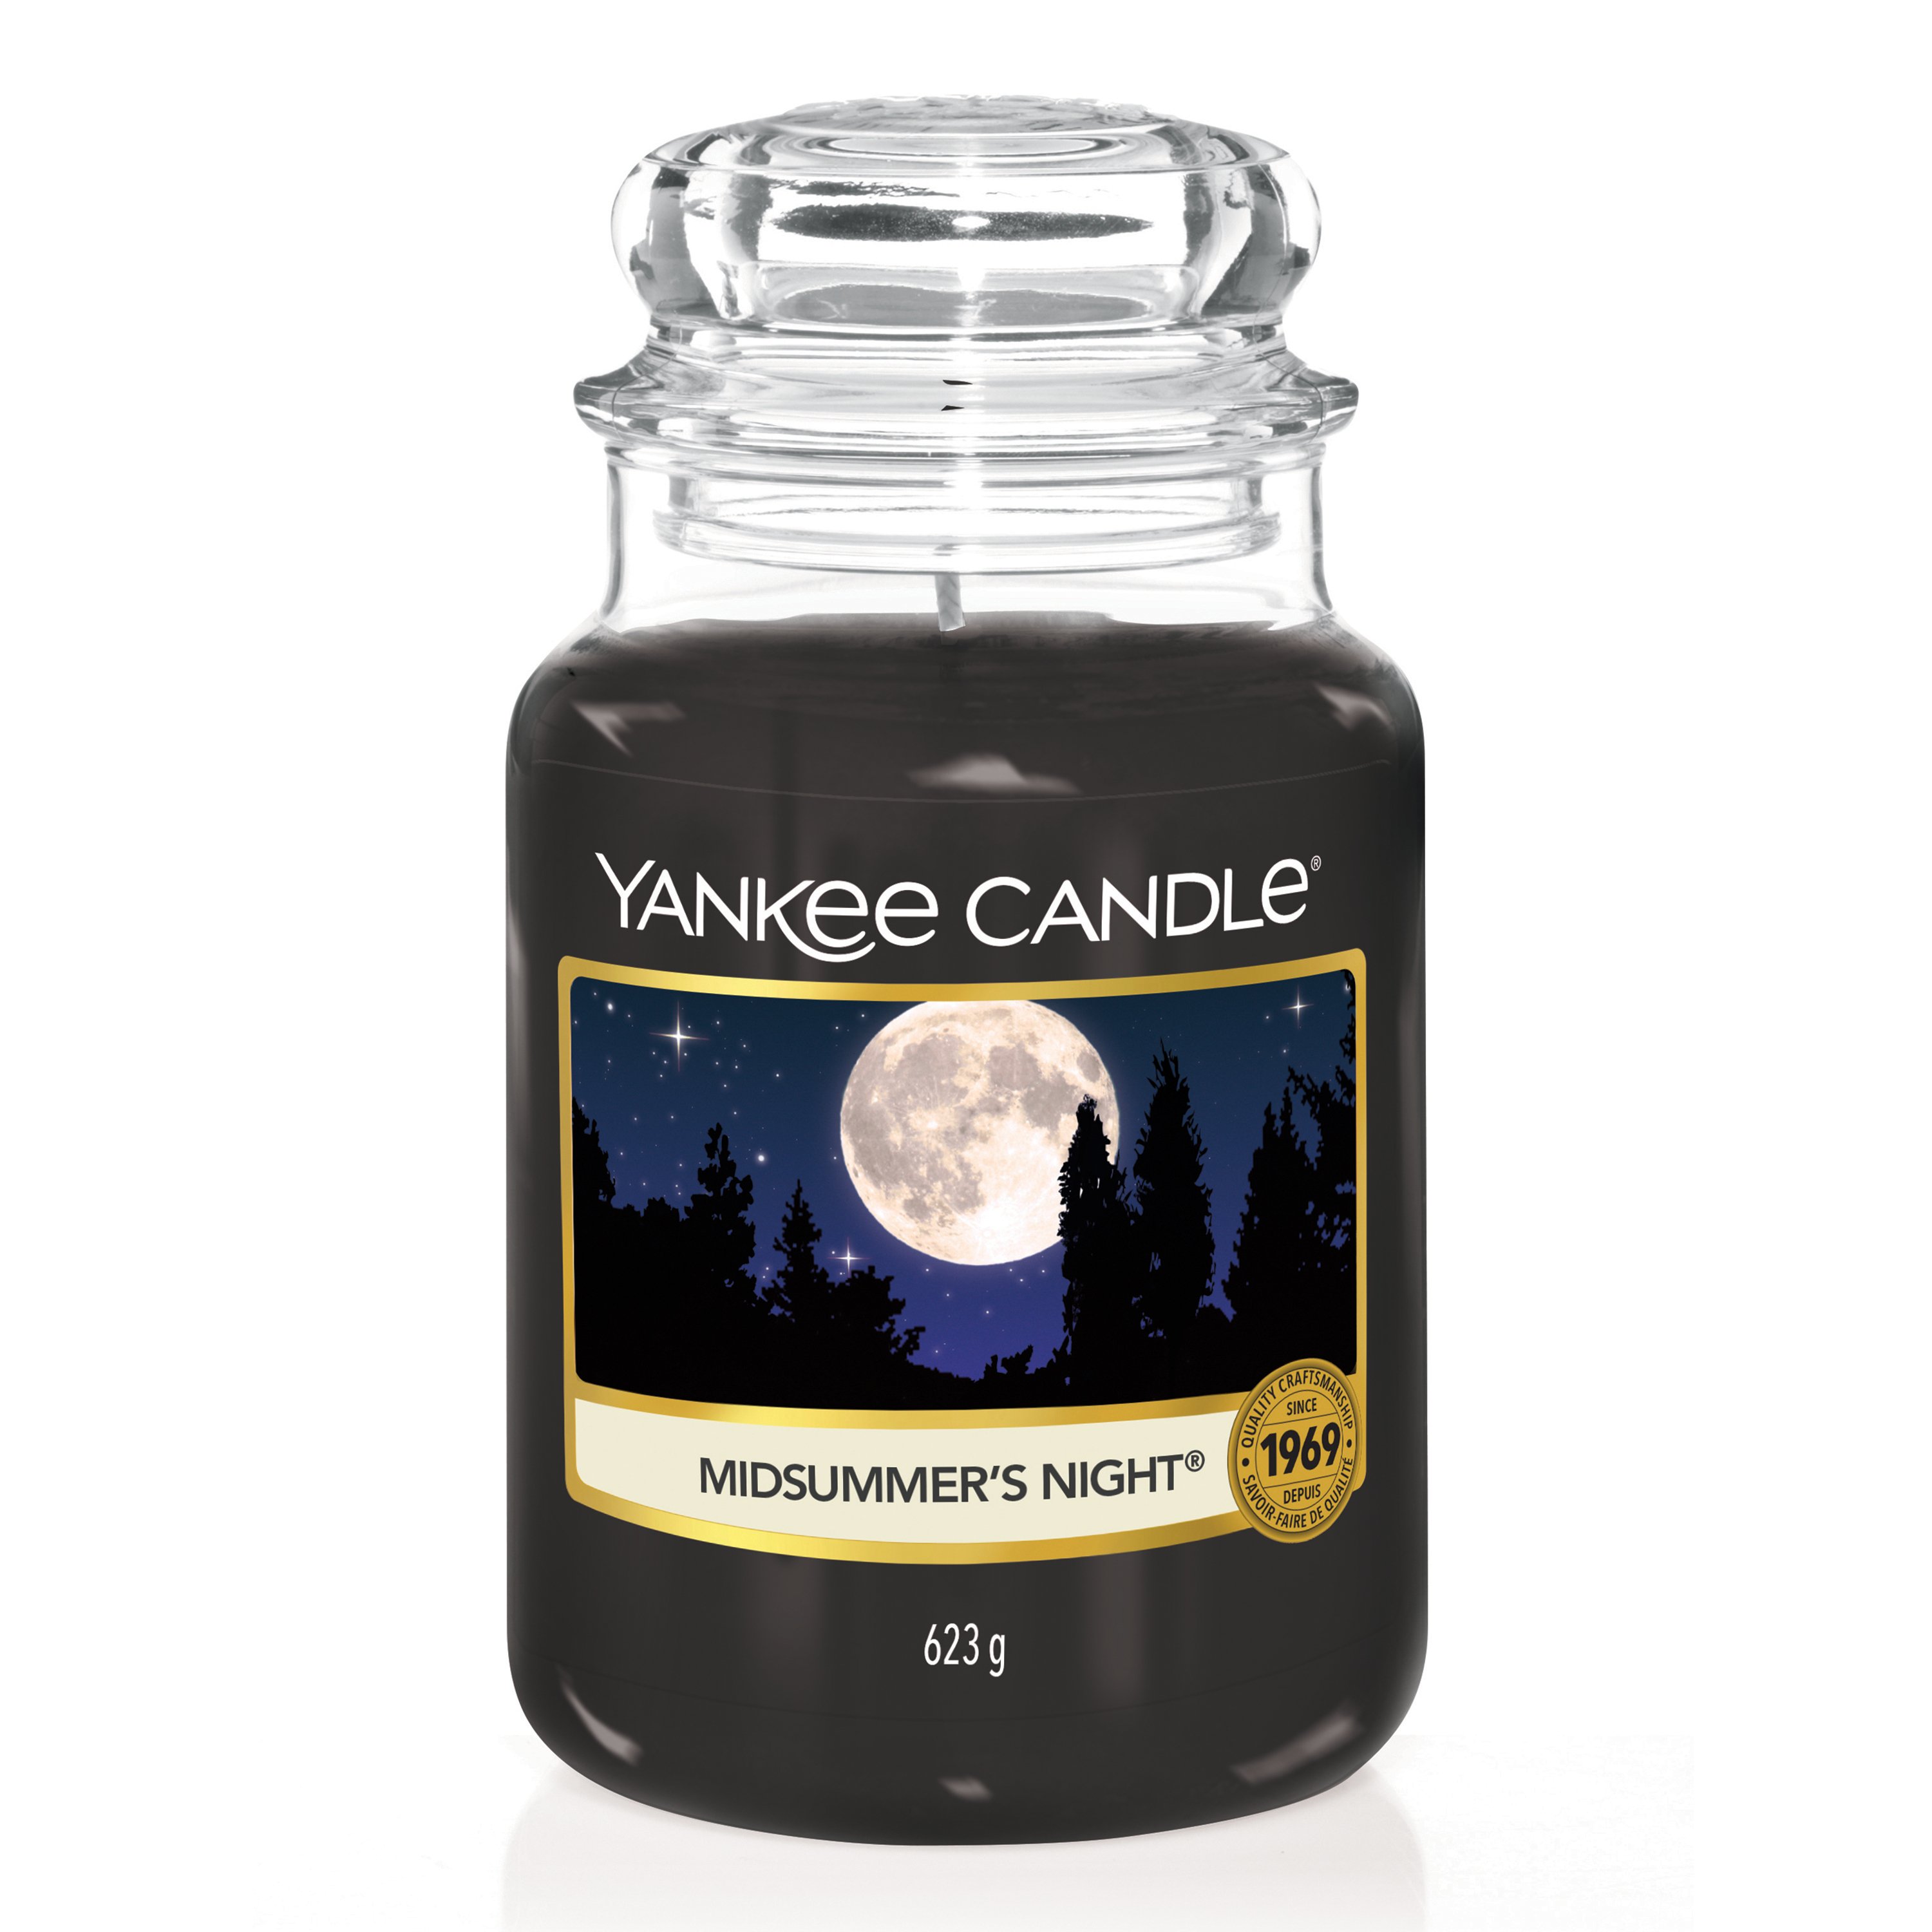 Midsummer's Night® Original Large Jar Candle - Original Jar Candles